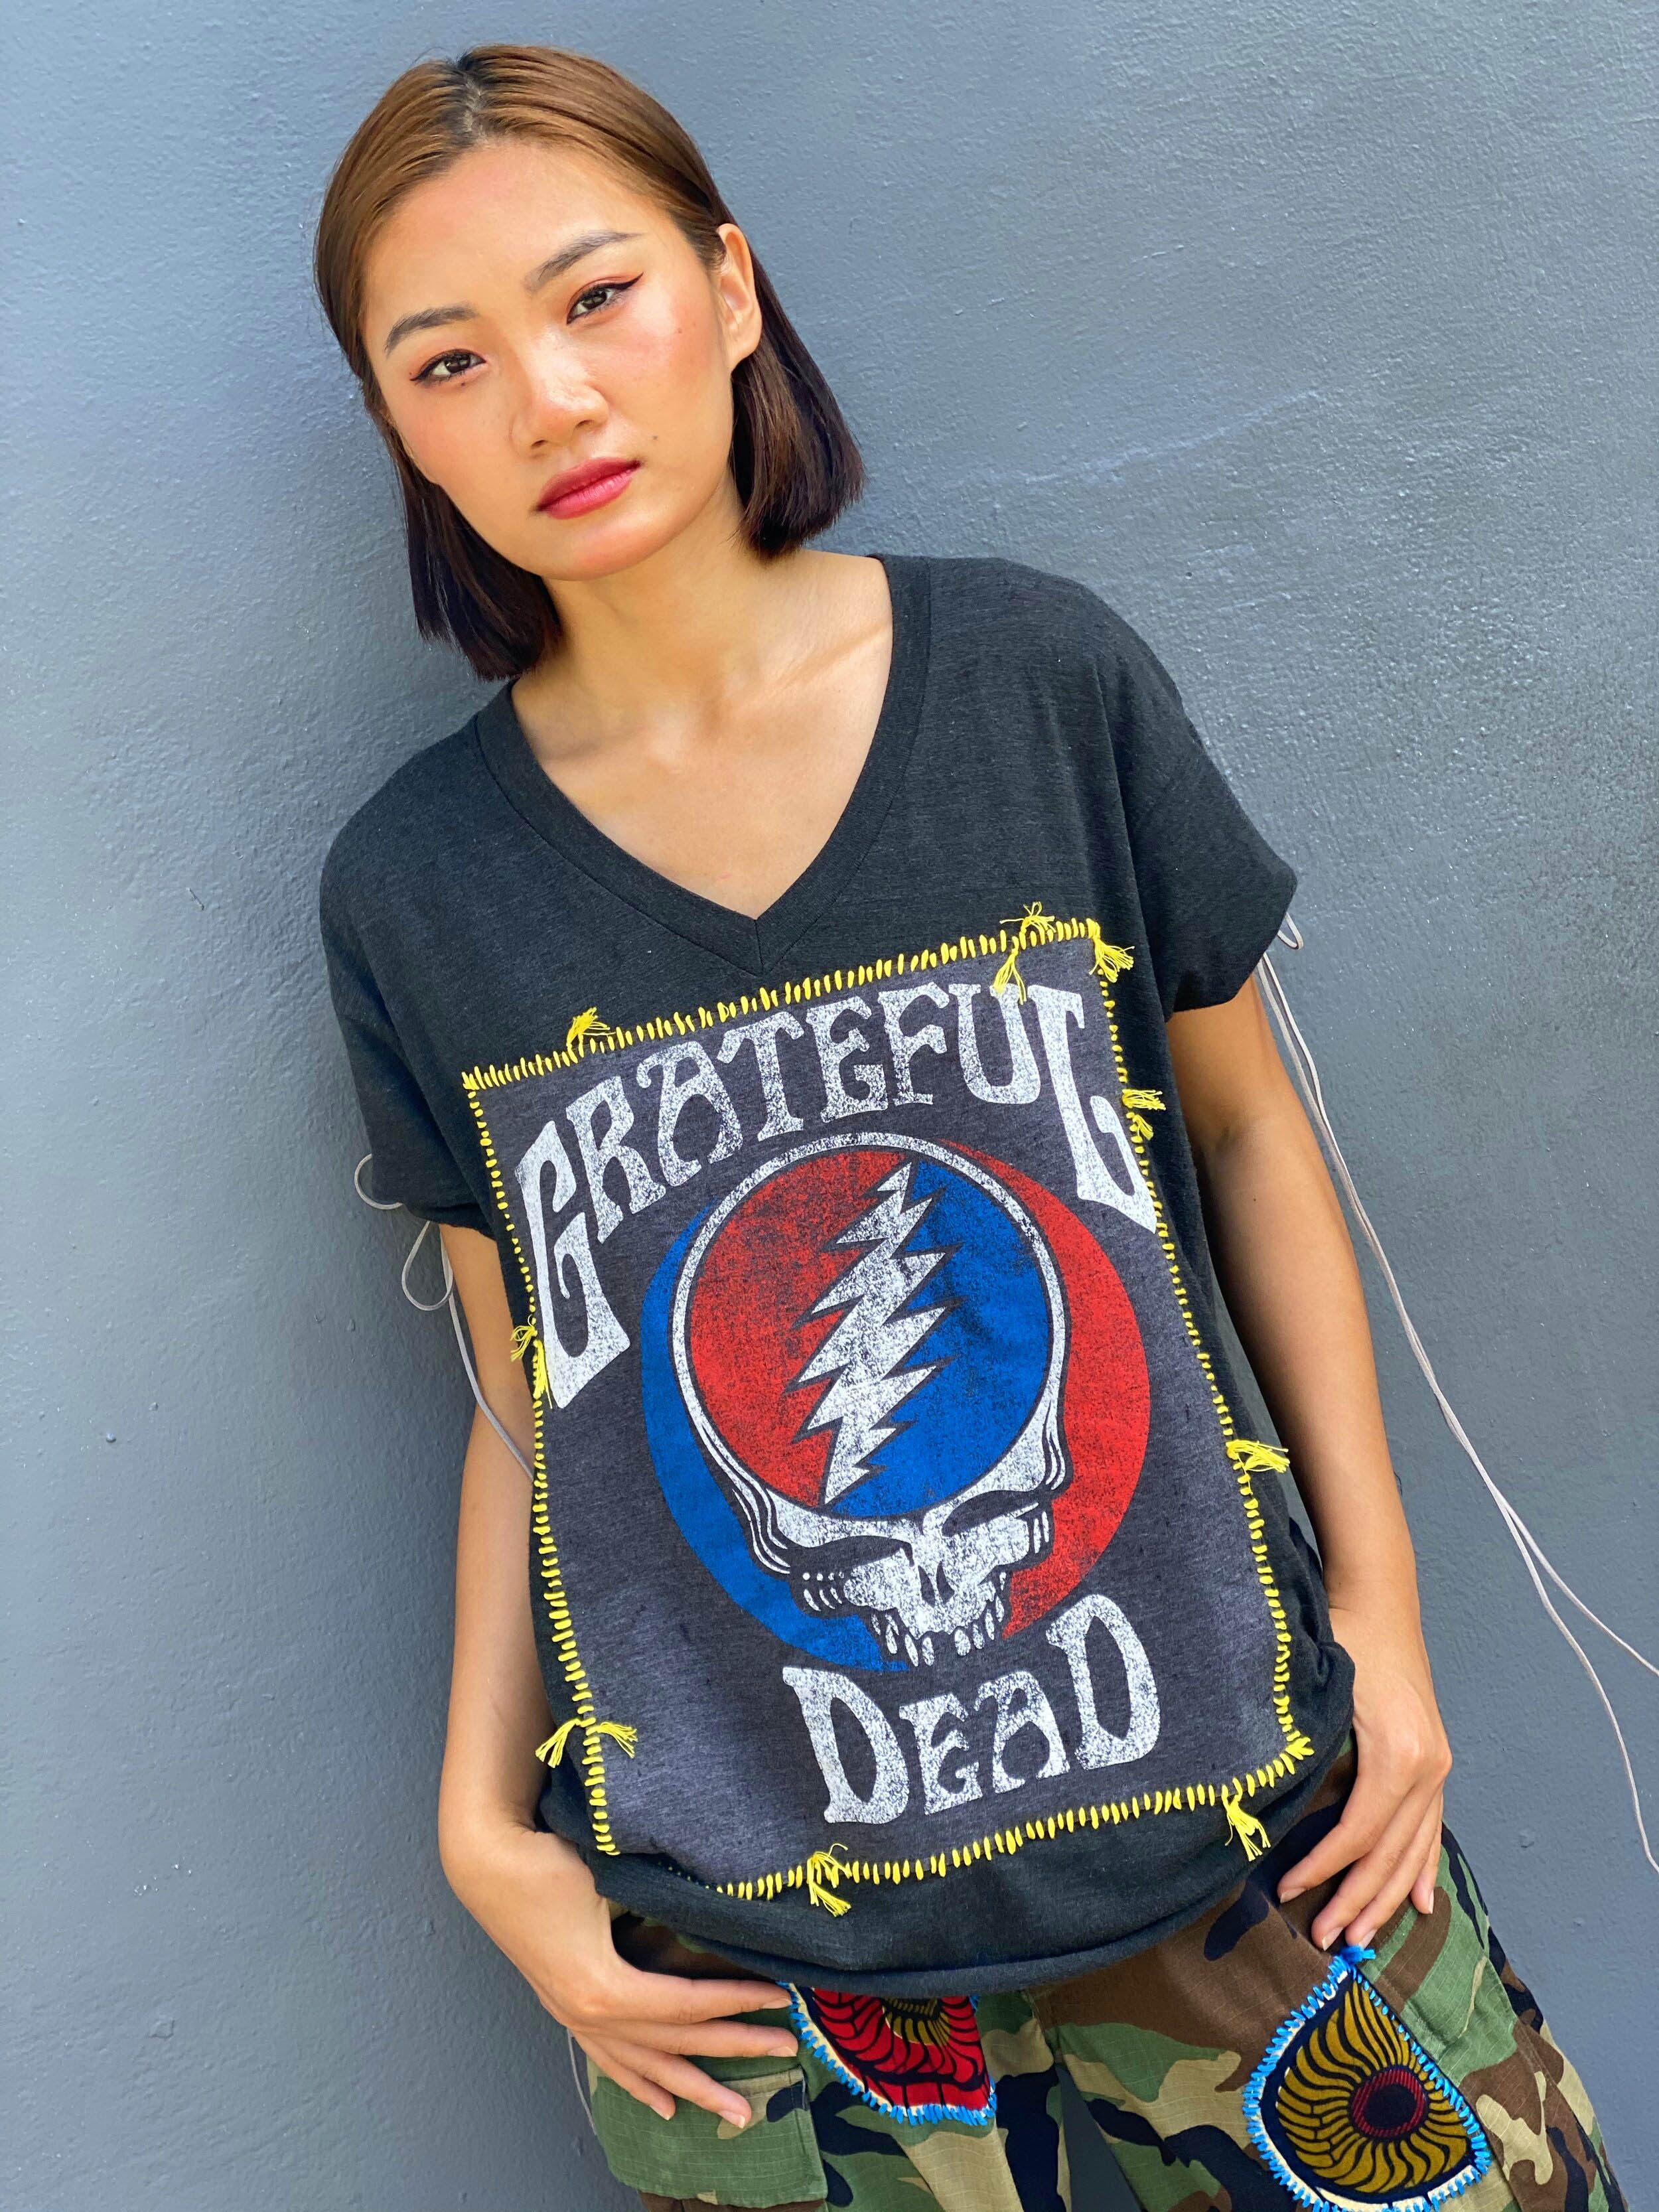 The Grateful Dead T-shirt